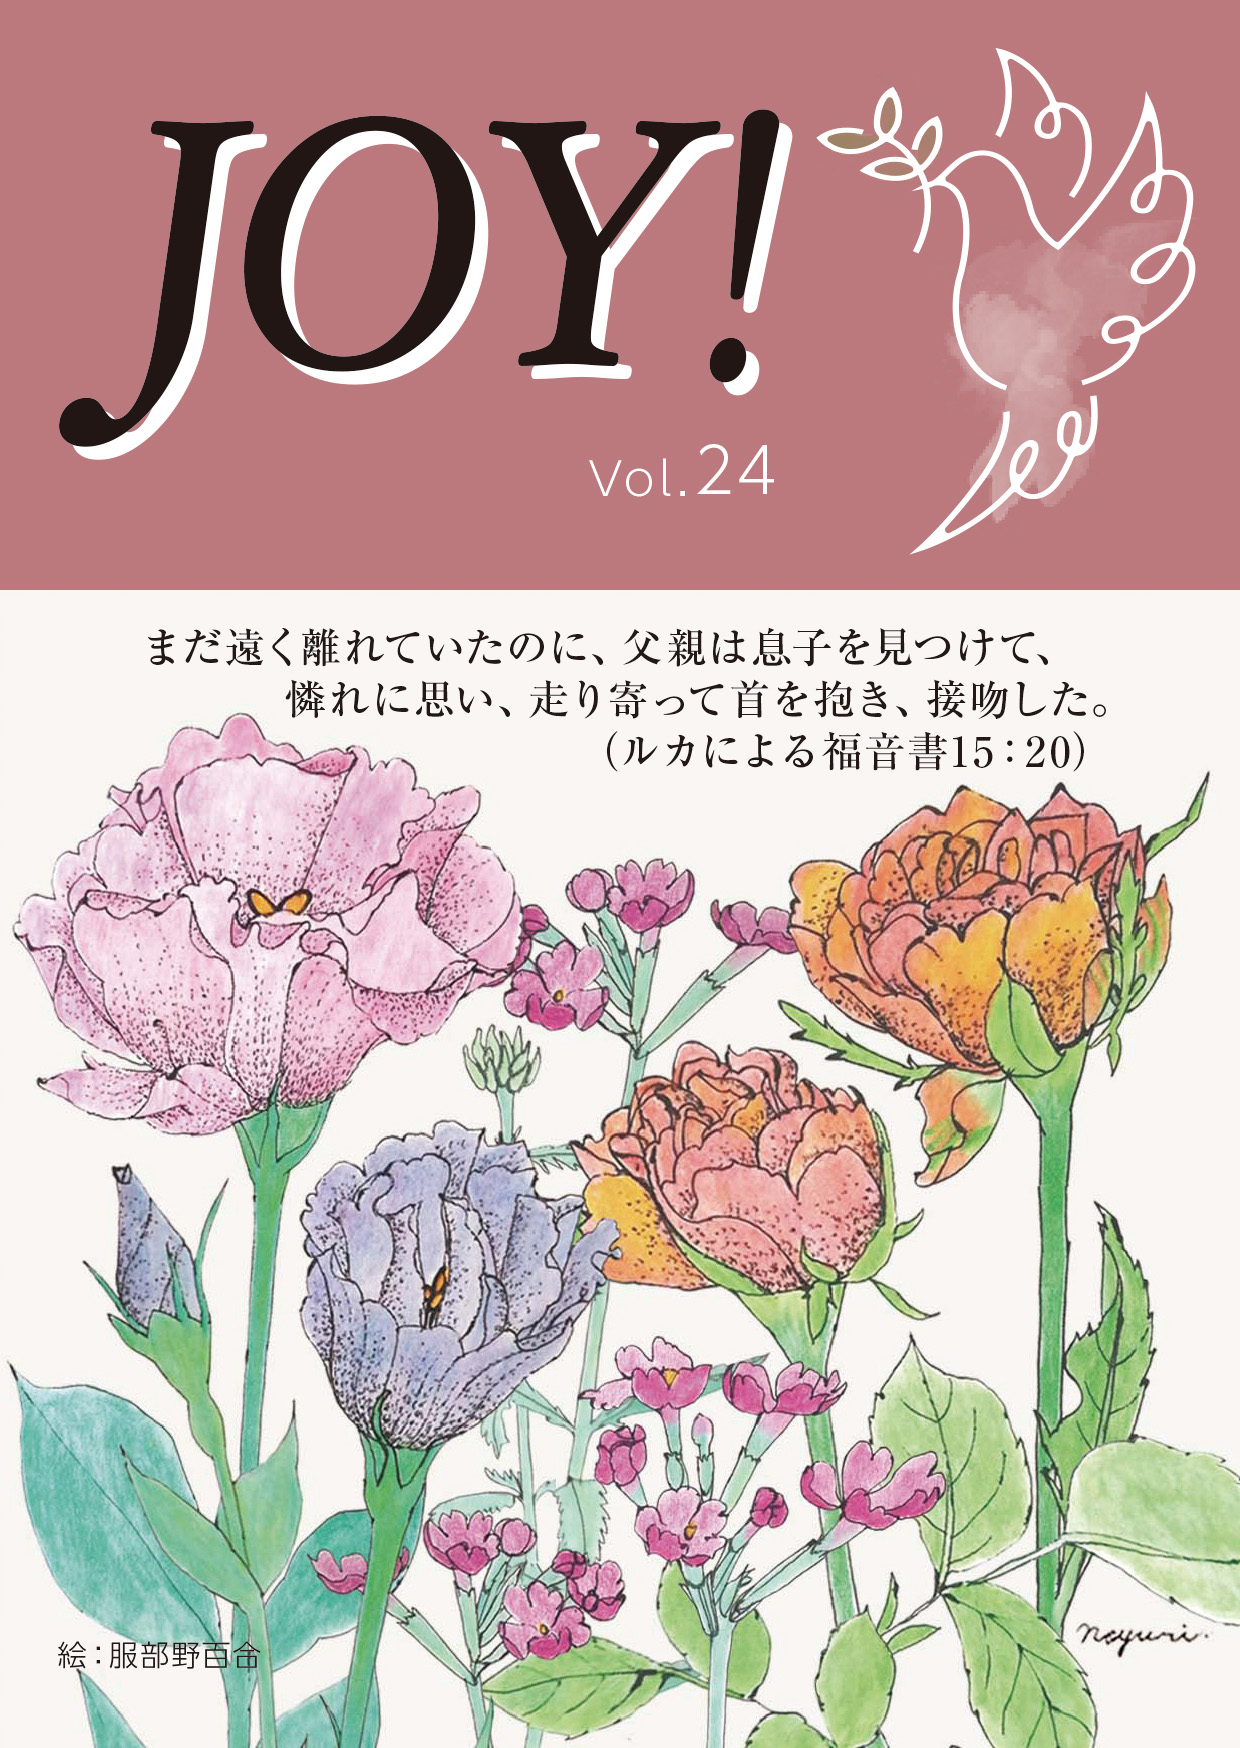 季刊紙 『JOY!』秋号配布中(Vol.24)